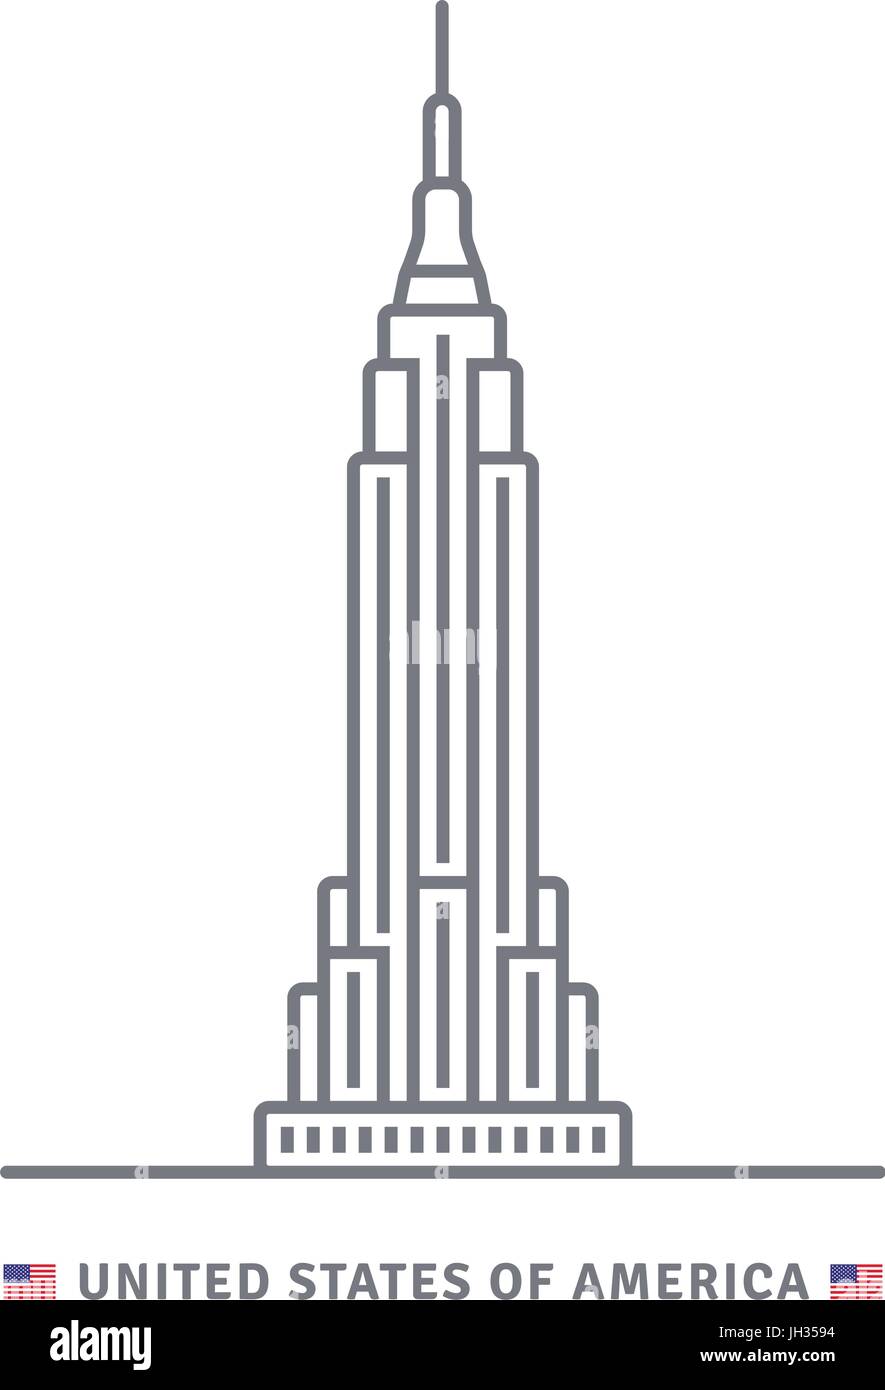 Vereinigte Staaten von Amerika-Linie-Symbol. Empire State Building und USA Flagge Vektor-Illustration. Stock Vektor